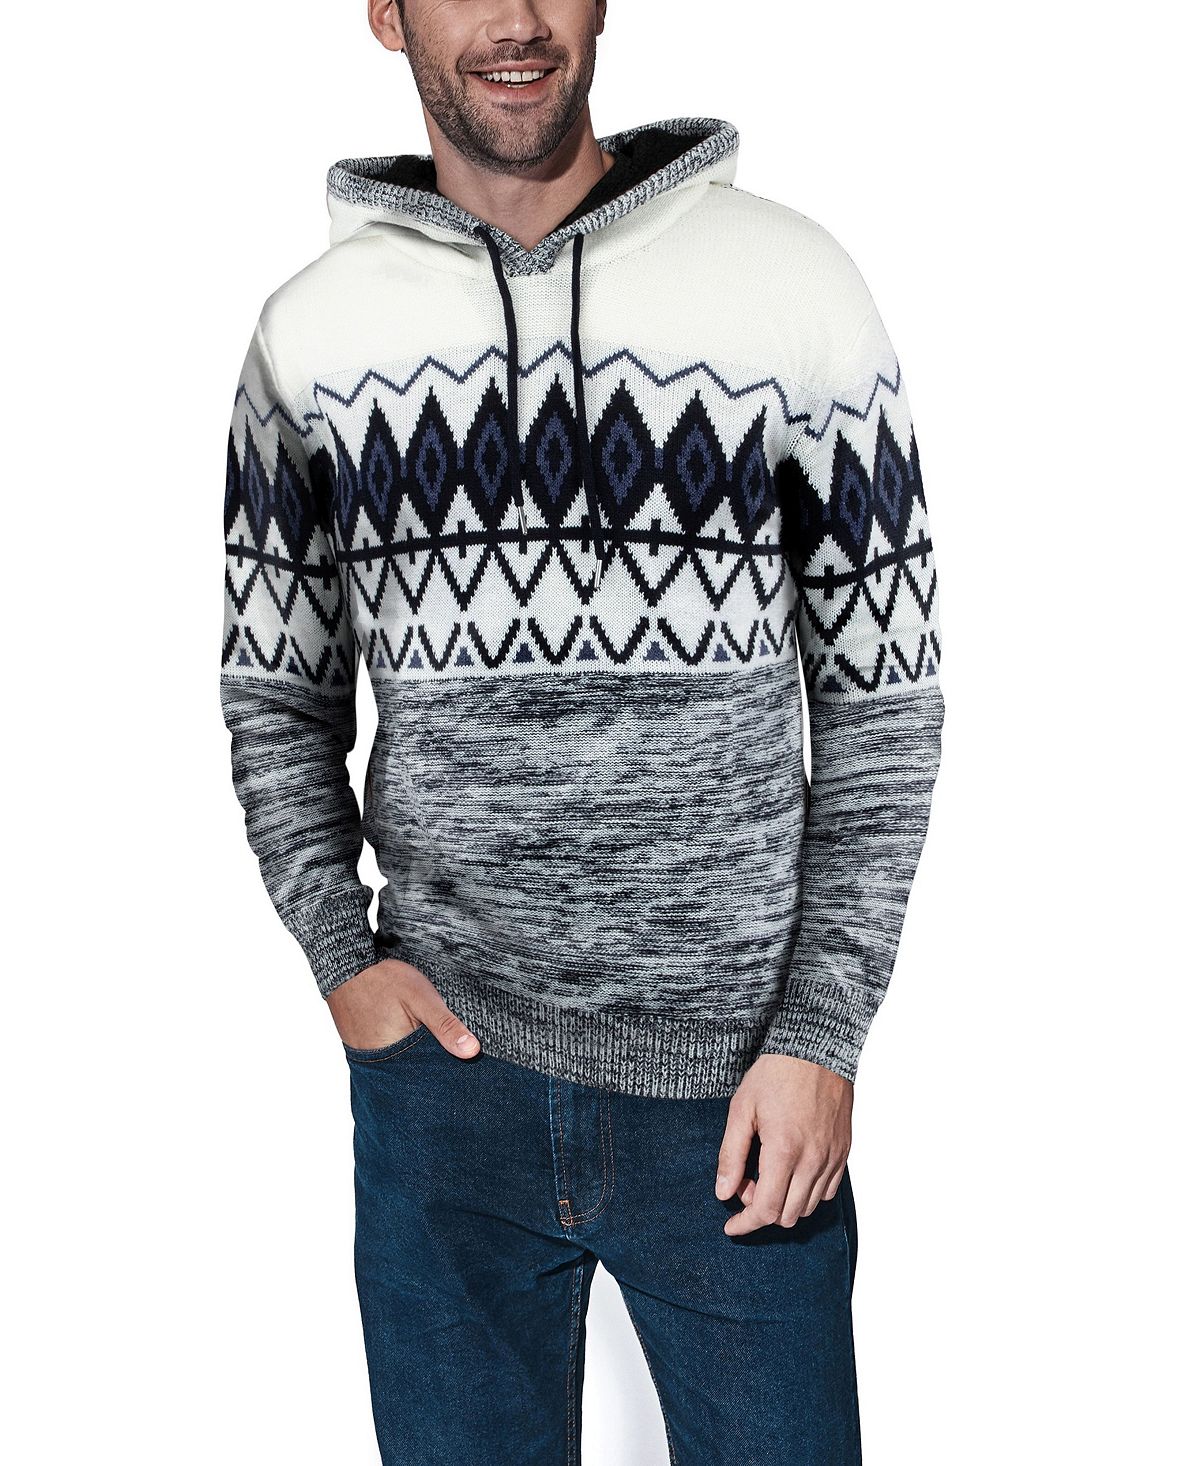 Мужской свитер с капюшоном с цветными блоками X-Ray, бирюзовый зимний однотонный кашемировый вязаный кардиган повседневный мужской свитер с капюшоном и воротником